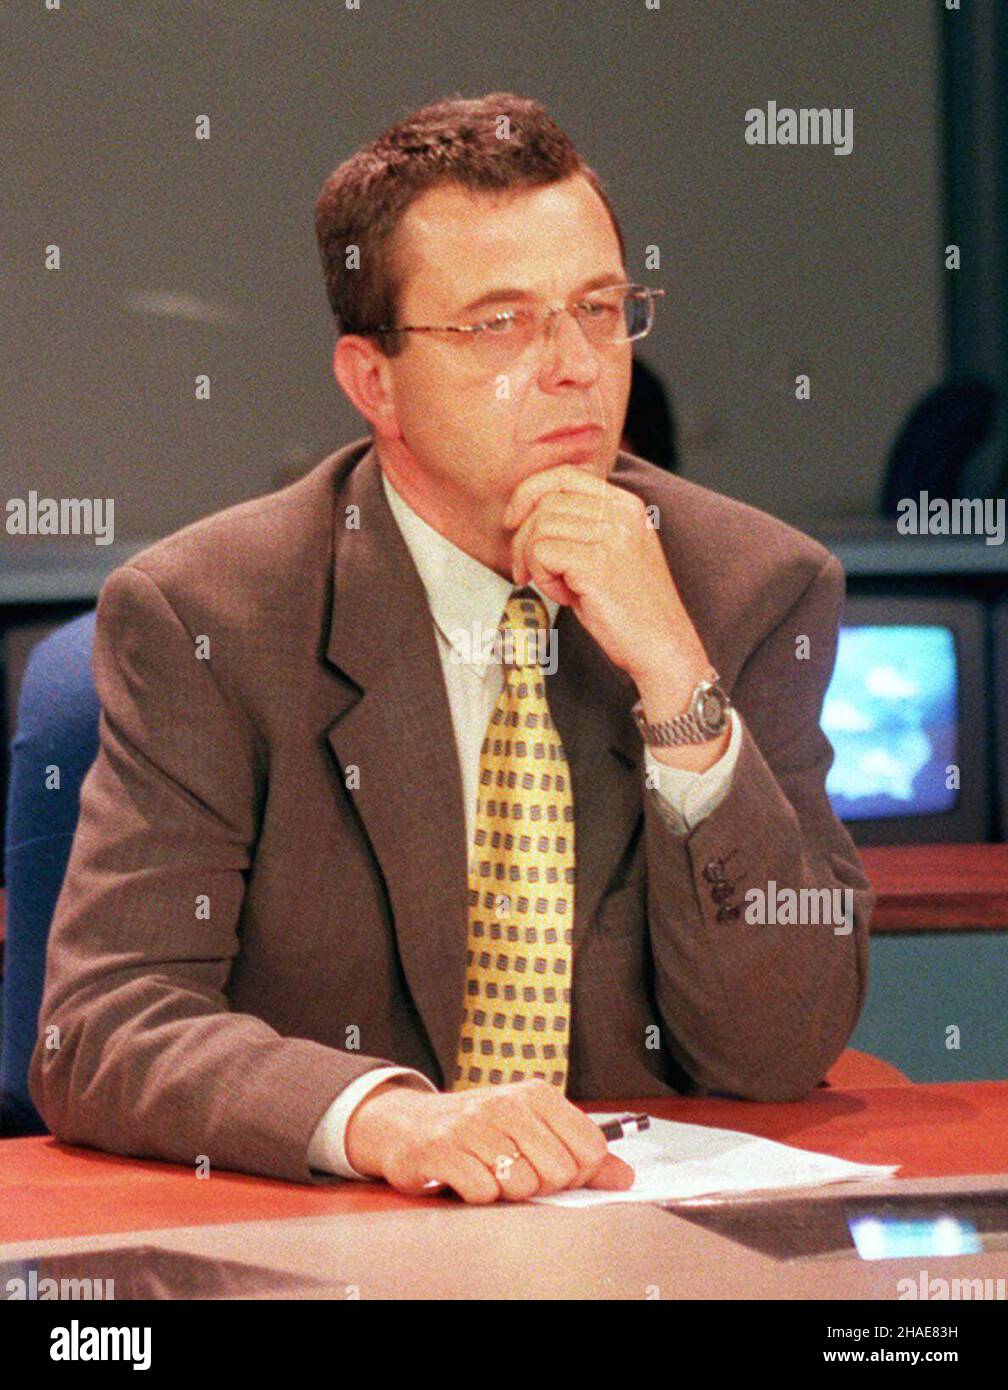 Warszawa, 13.03.1998. Dziennikarz, Grzegorz Miecugow. (mr) PAP/Radek Pietruszka     Warsaw, 13.03.1998. Polish journalist, Grzegorz Miecugow. (mr) PAP/Radek Pietruszka Stock Photo